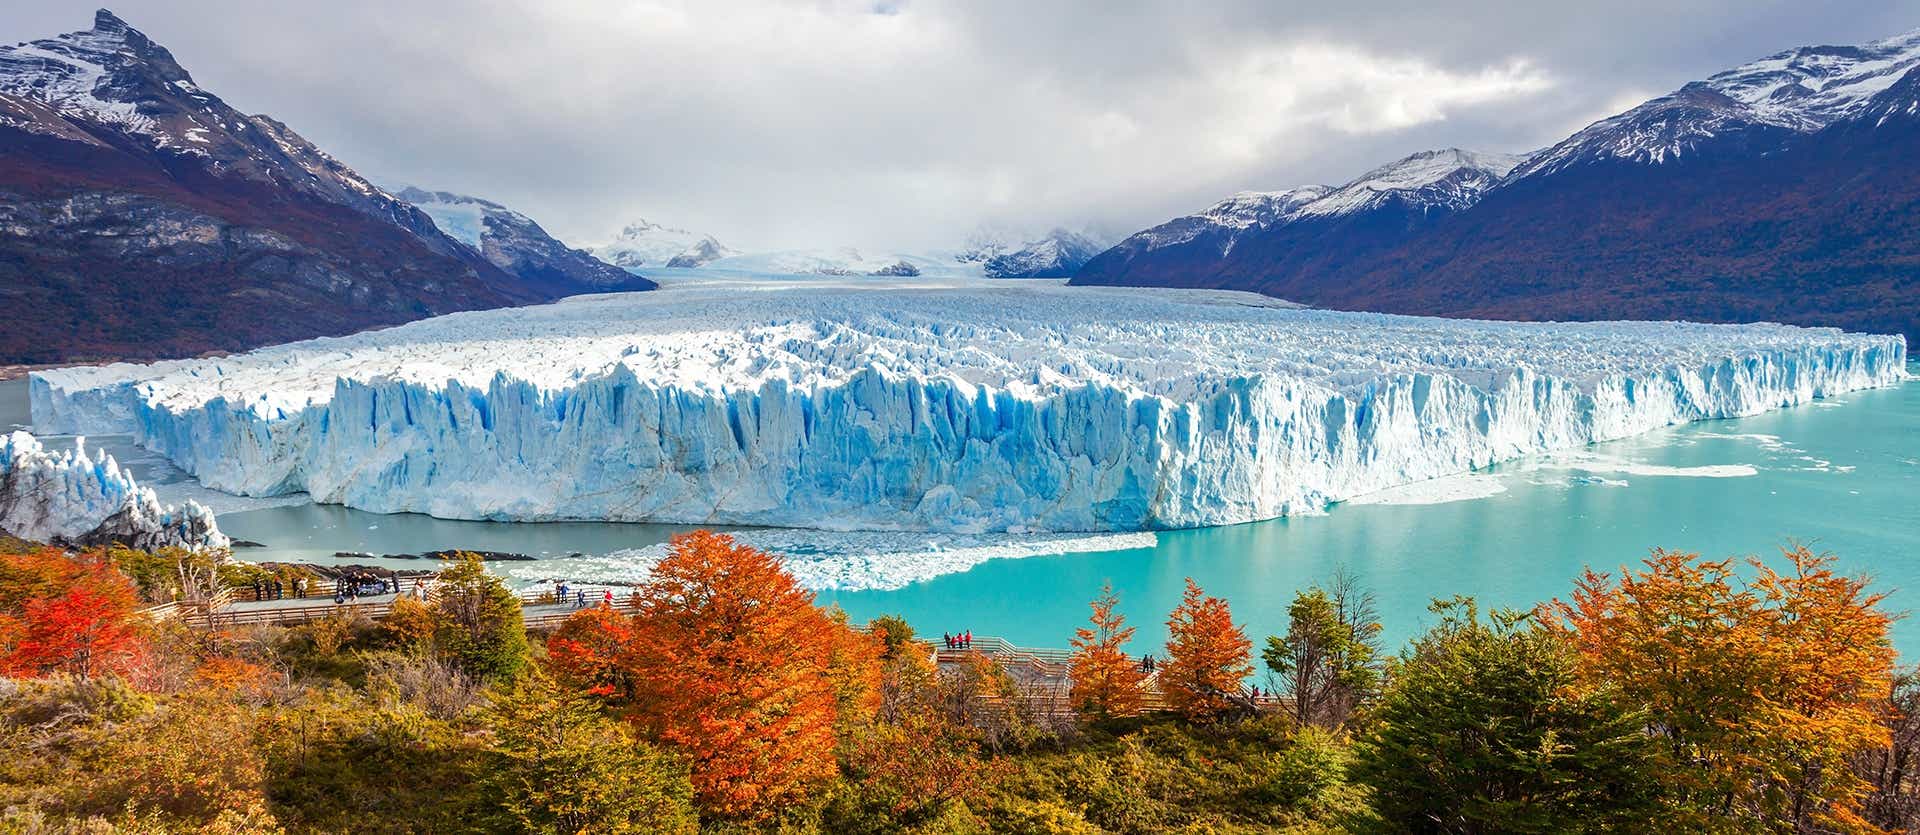 <span class="iconos separador"></span> Glaciar Perito Moreno <span class="iconos separador"></span>